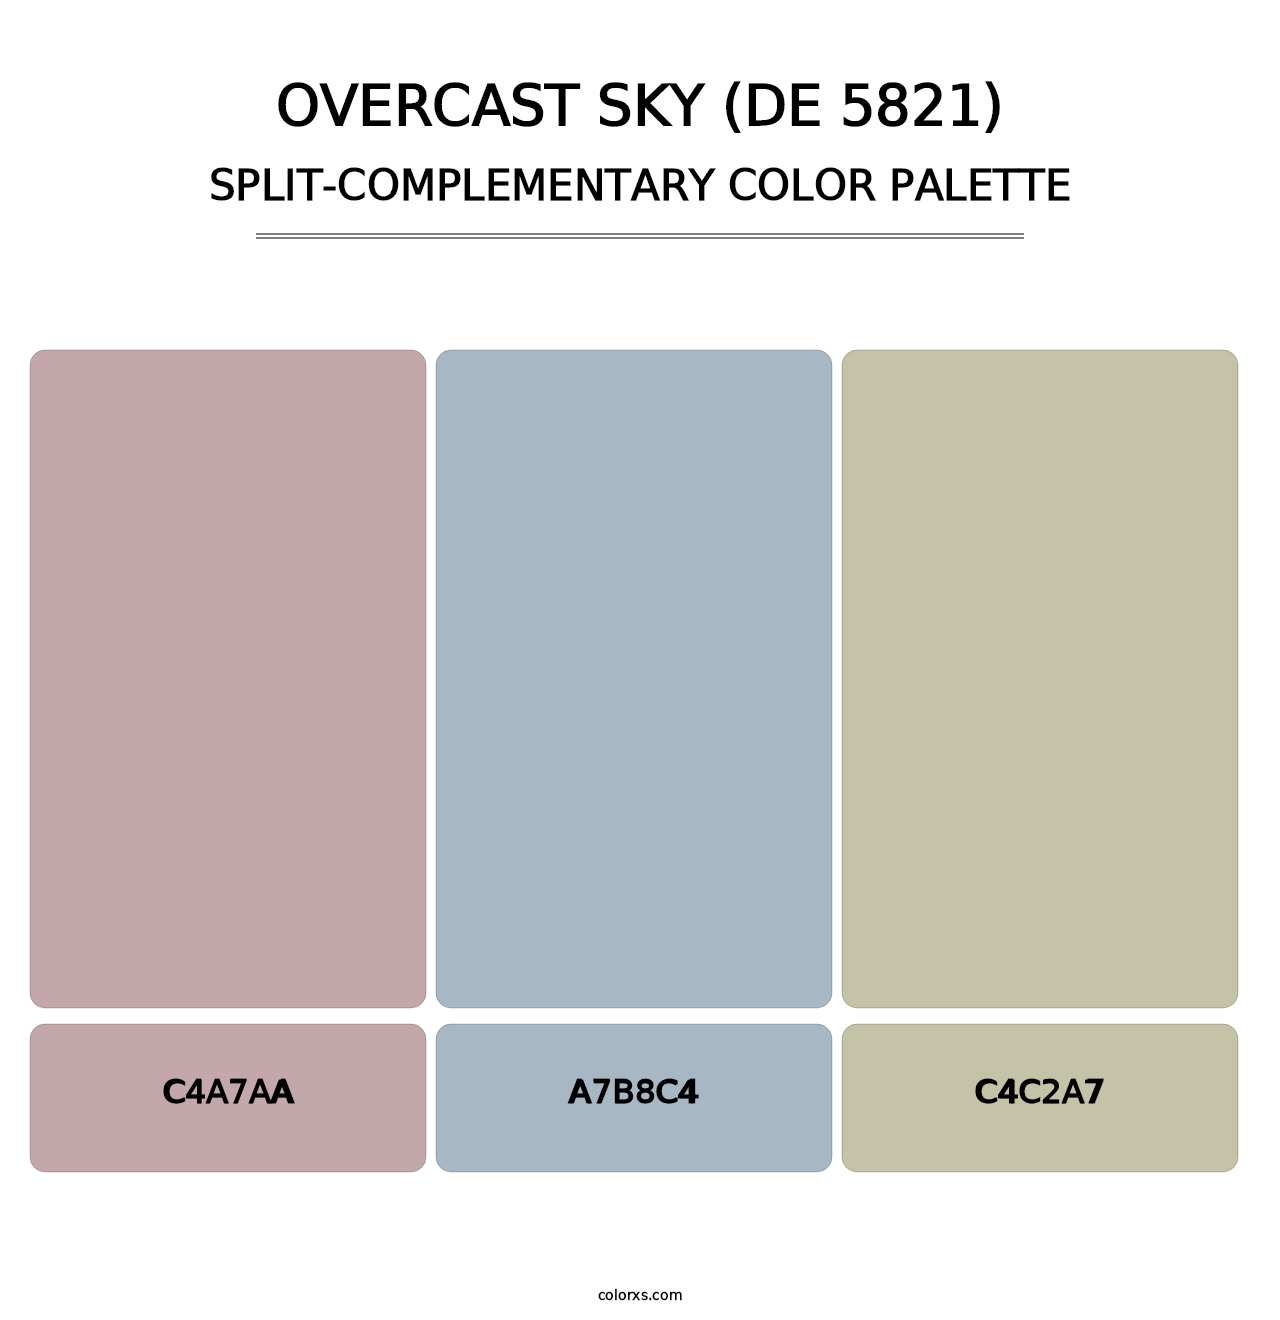 Overcast Sky (DE 5821) - Split-Complementary Color Palette